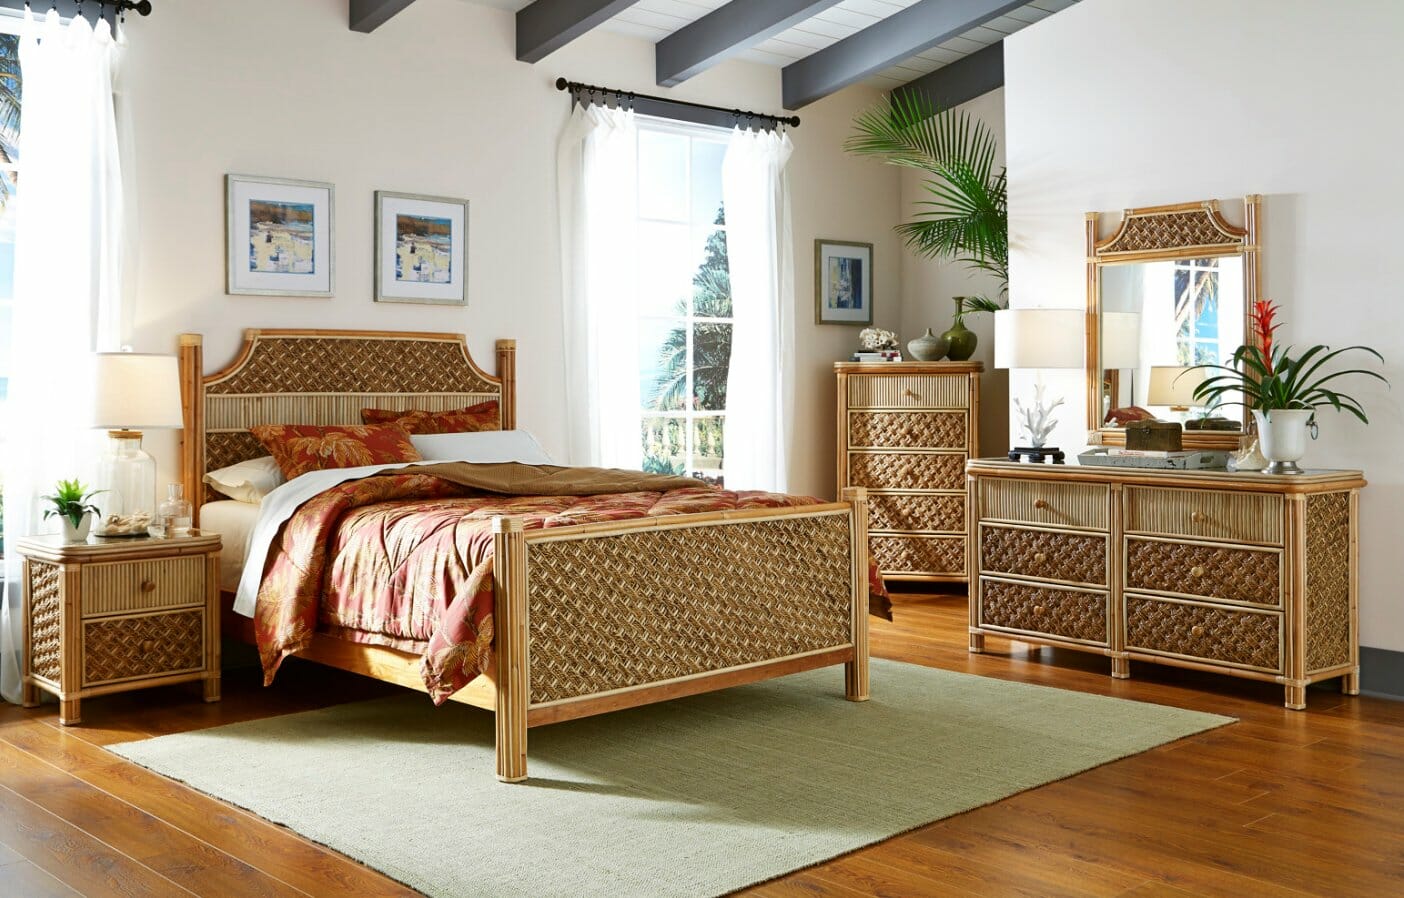 tropical bedroom furniture set